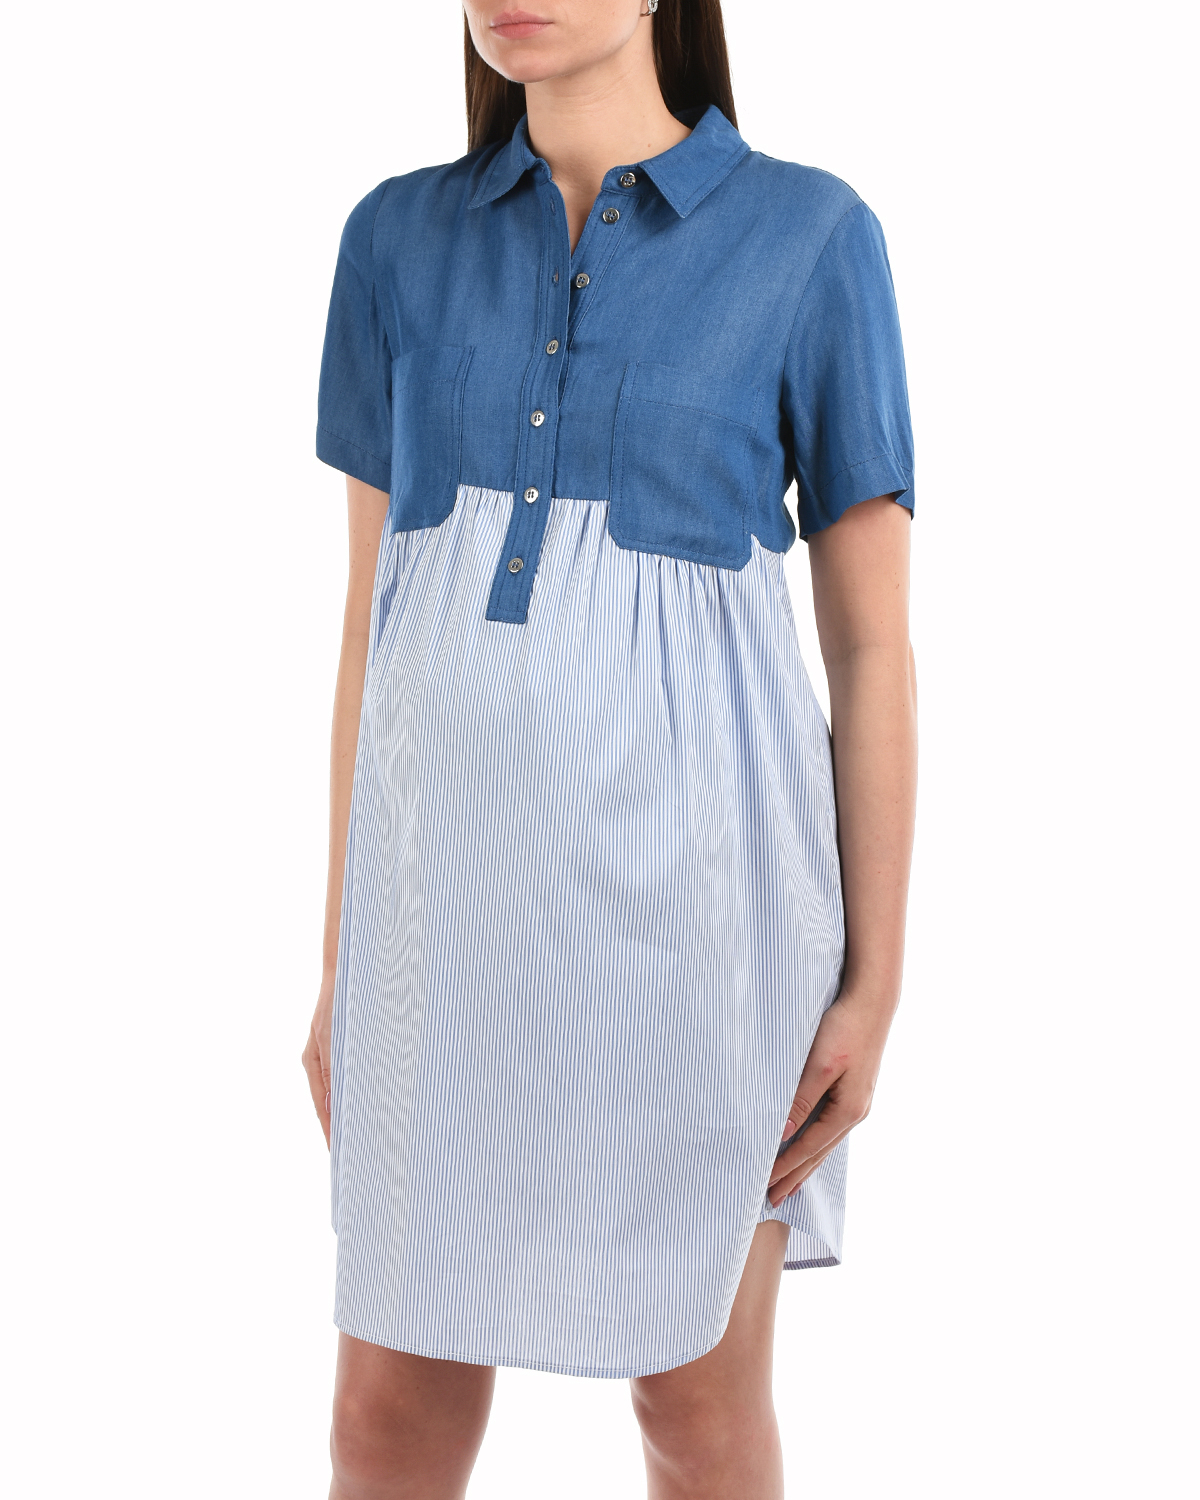 Синее платье с короткими рукавами Attesa, размер 38, цвет синий - фото 7